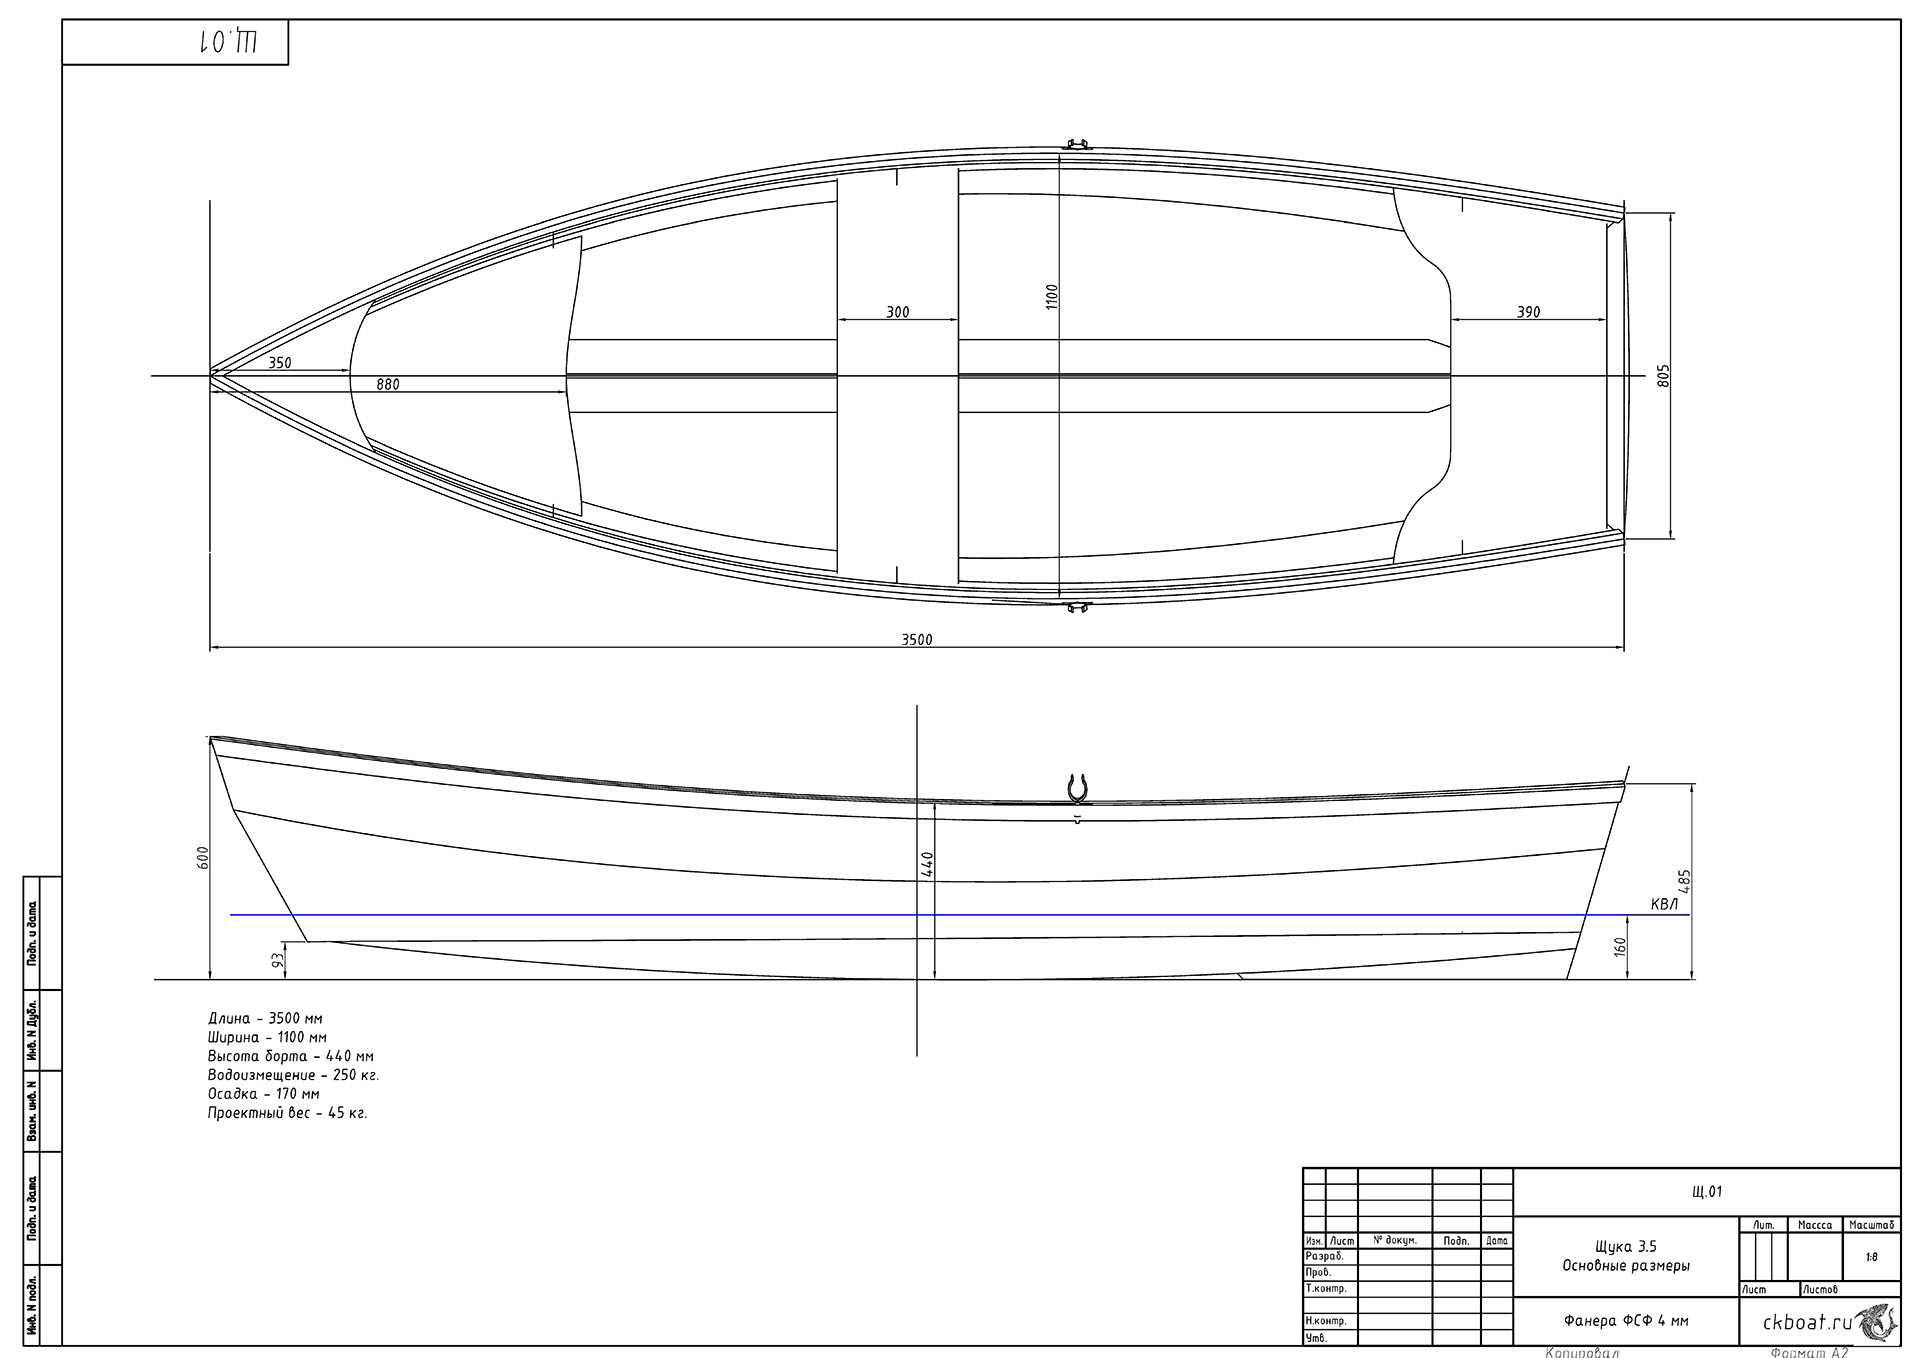 Лодка из фанеры Щука 3.5-Основные размеры